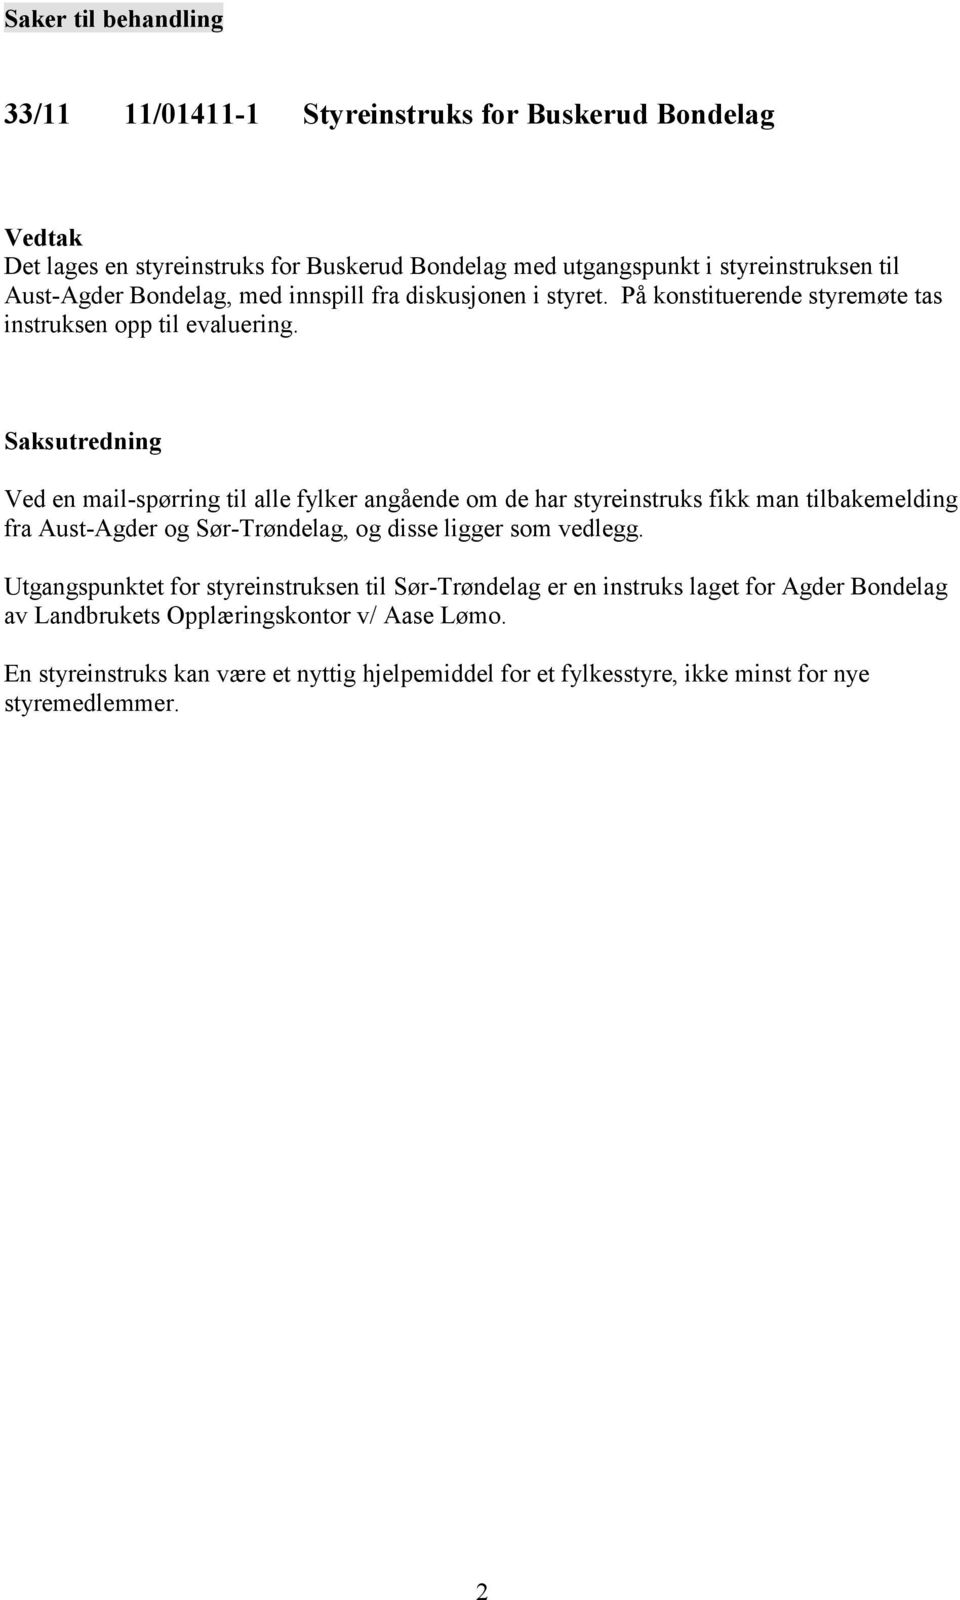 Ved en mail-spørring til alle fylker angående om de har styreinstruks fikk man tilbakemelding fra Aust-Agder og Sør-Trøndelag, og disse ligger som vedlegg.